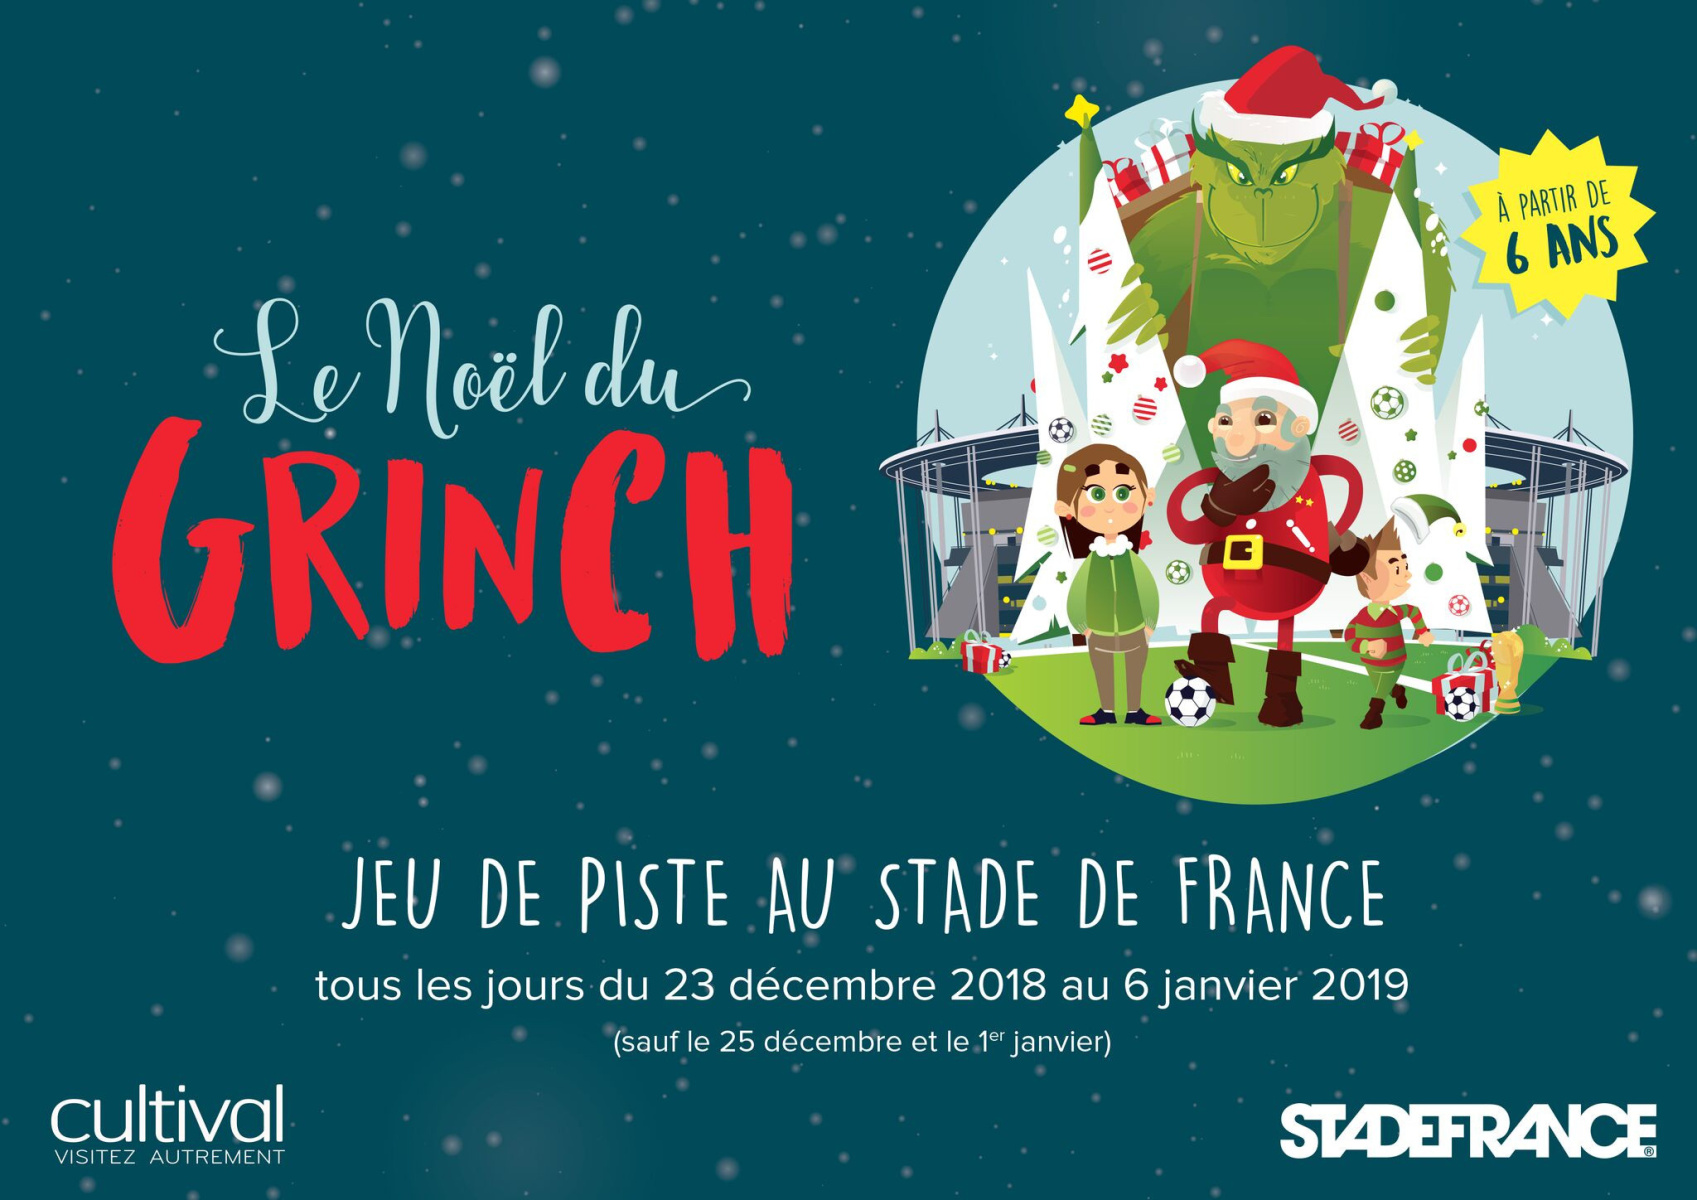 Jeu de piste : le Noël du Grinch au Stade de France - Arts in the City